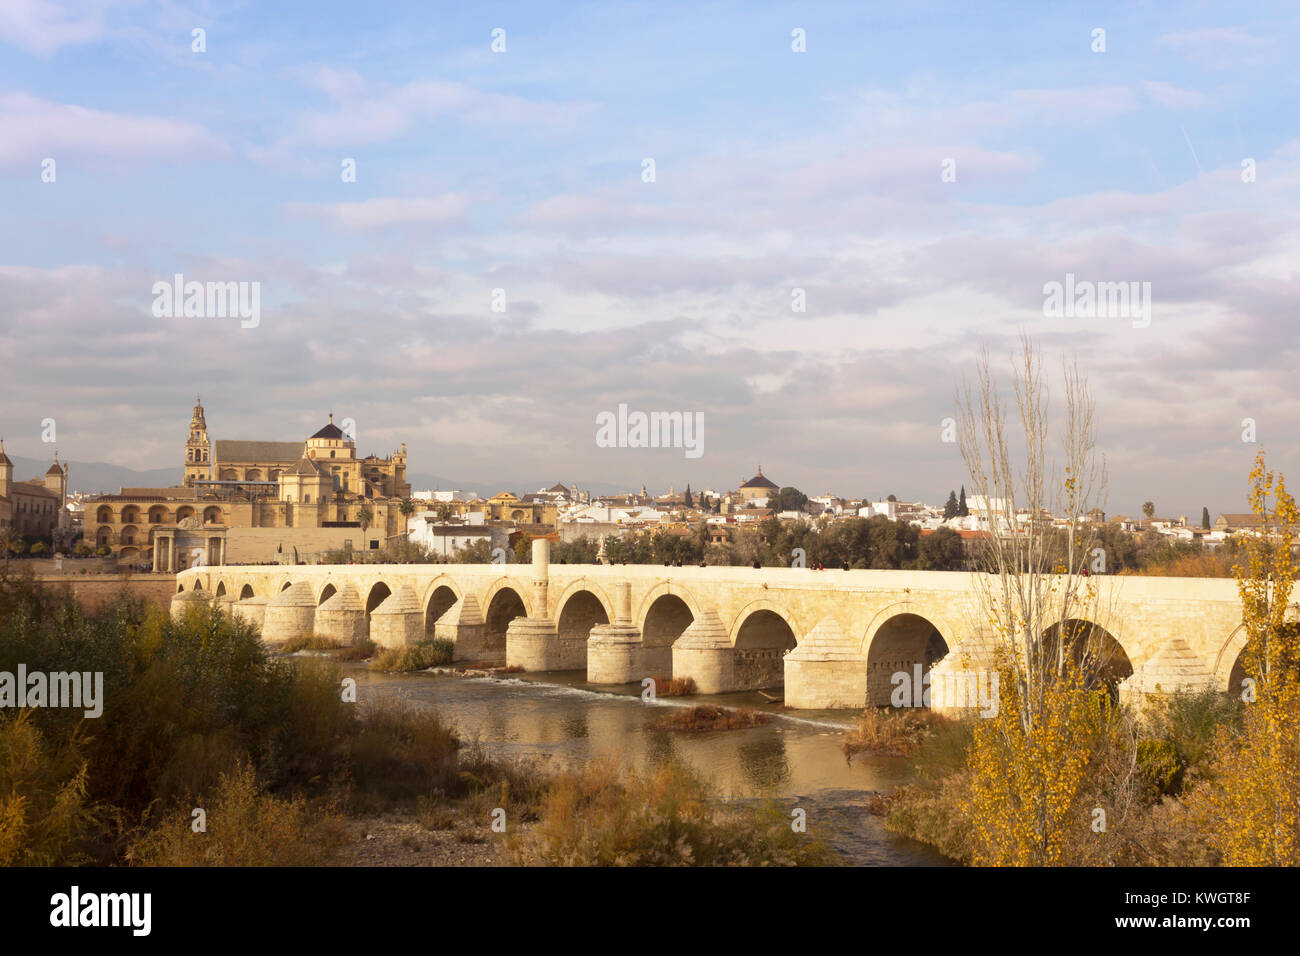 Cordoba, Andalusien, Spanien. Die römische Brücke über den Fluss Guadalquivir, die Moschee - die Kathedrale von Córdoba aka Große Moschee von Córdoba Stockfoto